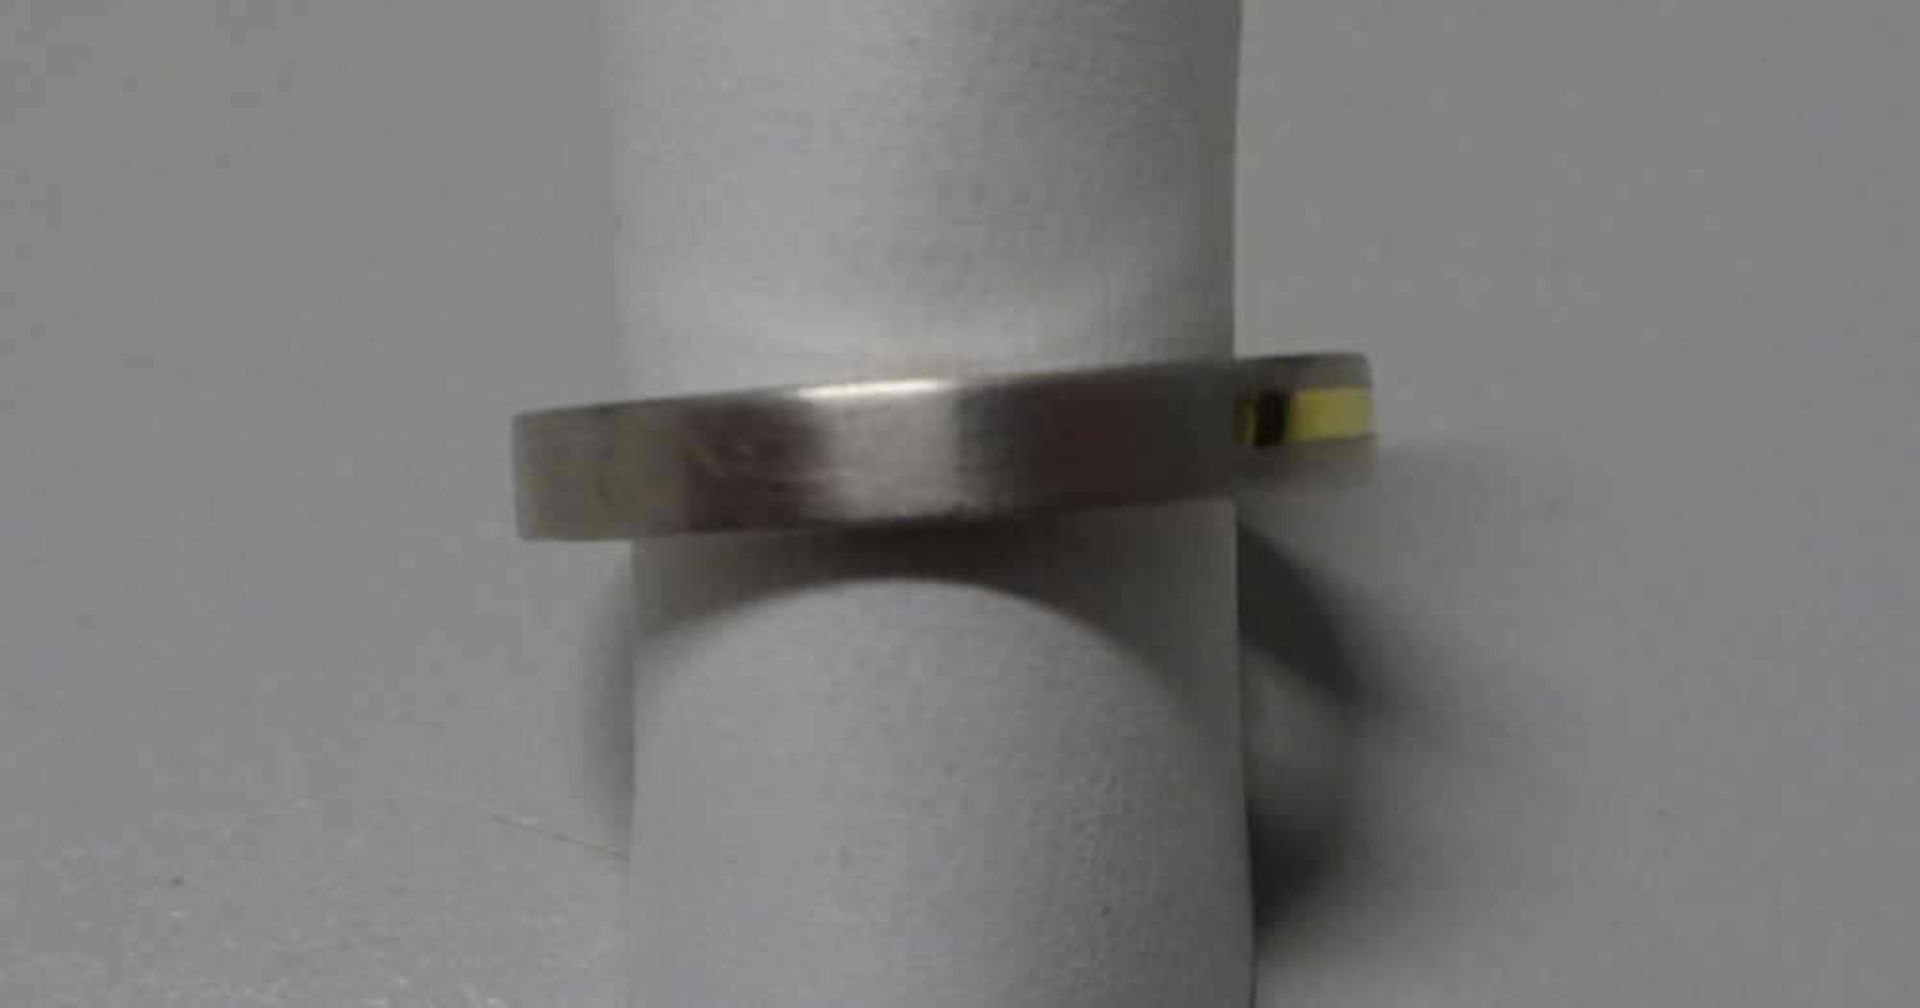 Damenring, 375er Weißgold, besetzt mit 7 kleinen Brillianten. Ringgröße 56. Gewicht ca. 3,4gLadies